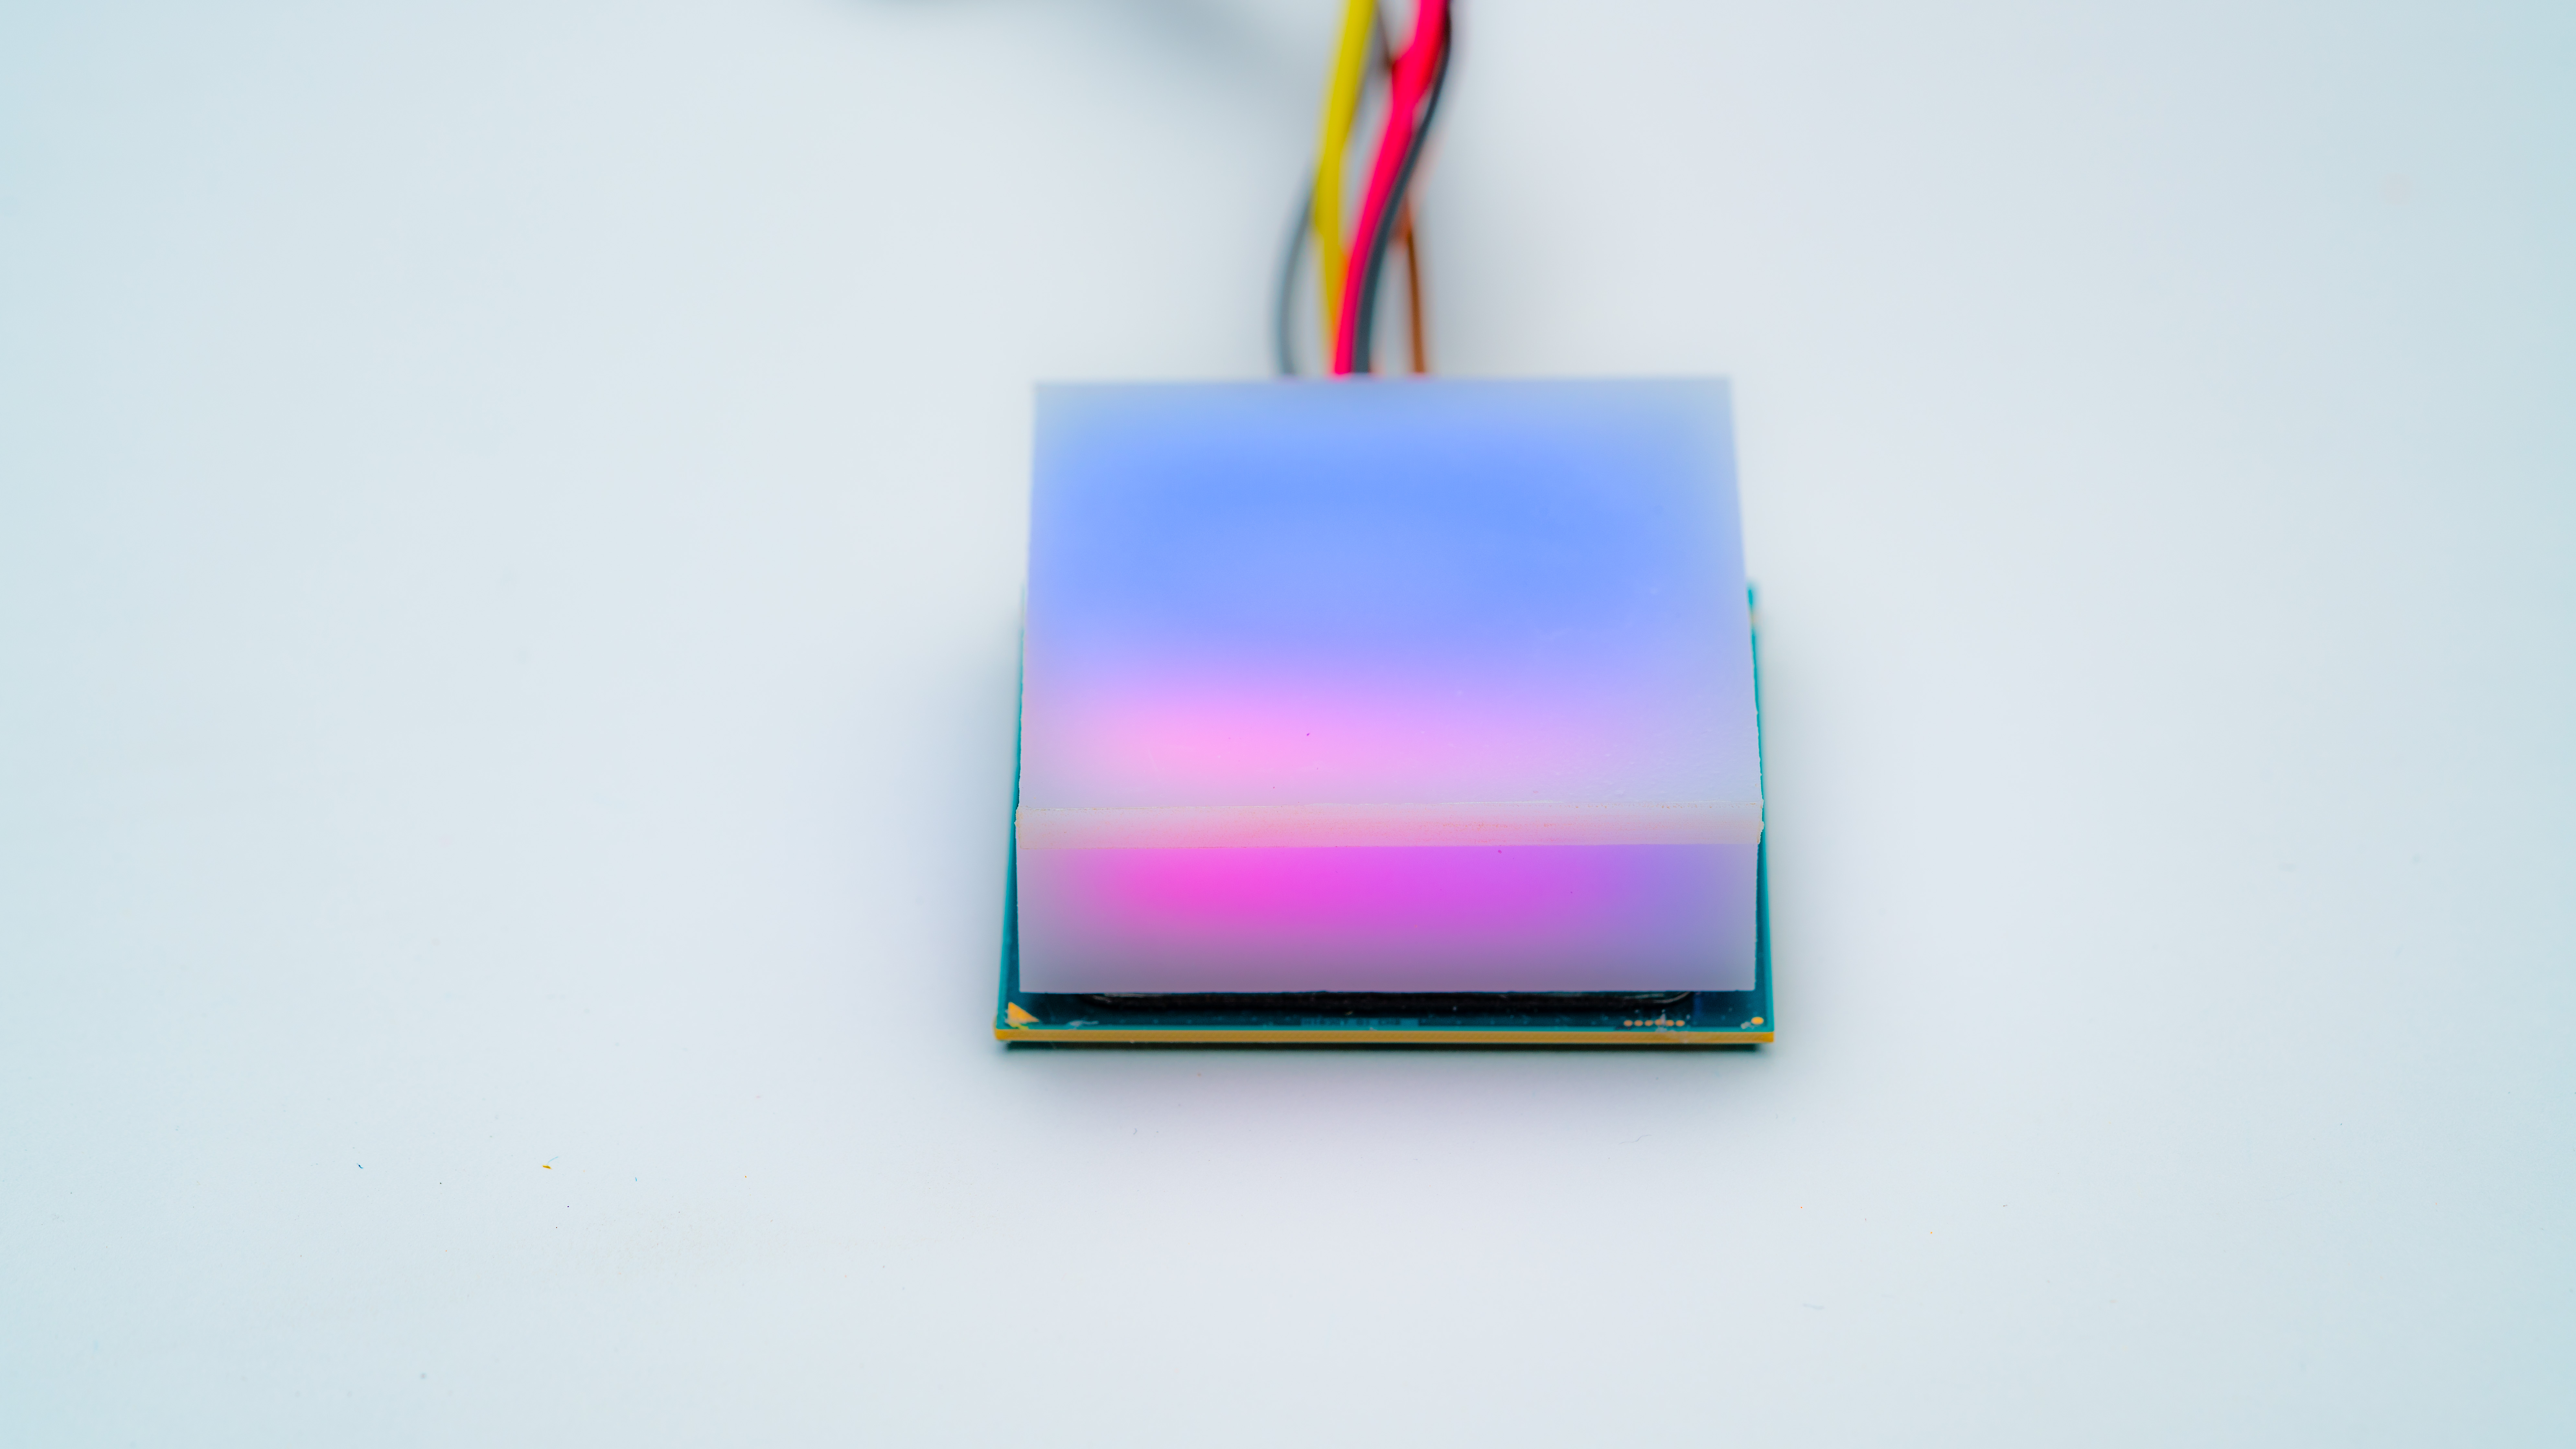 Newegg’s iBrite CPU: A Making Of